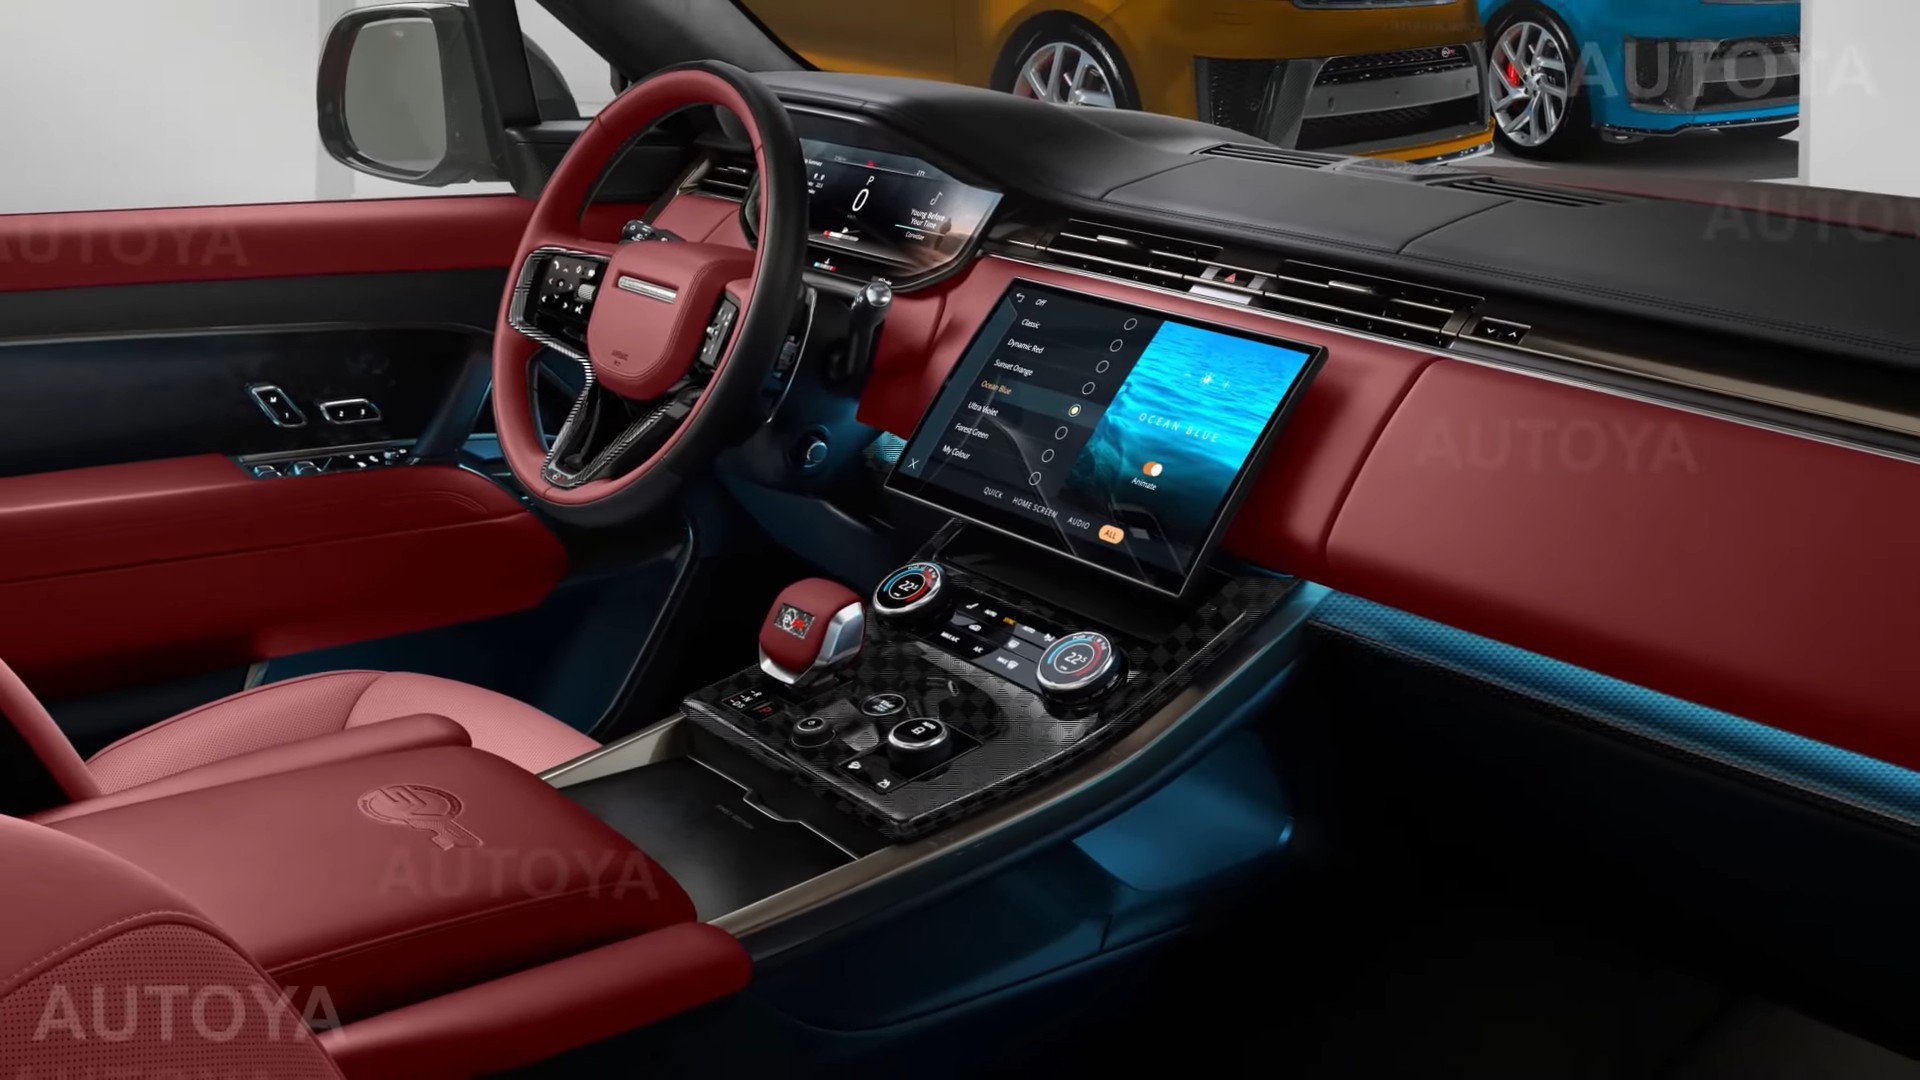 Range Rover Sport Interior Images Matttroy